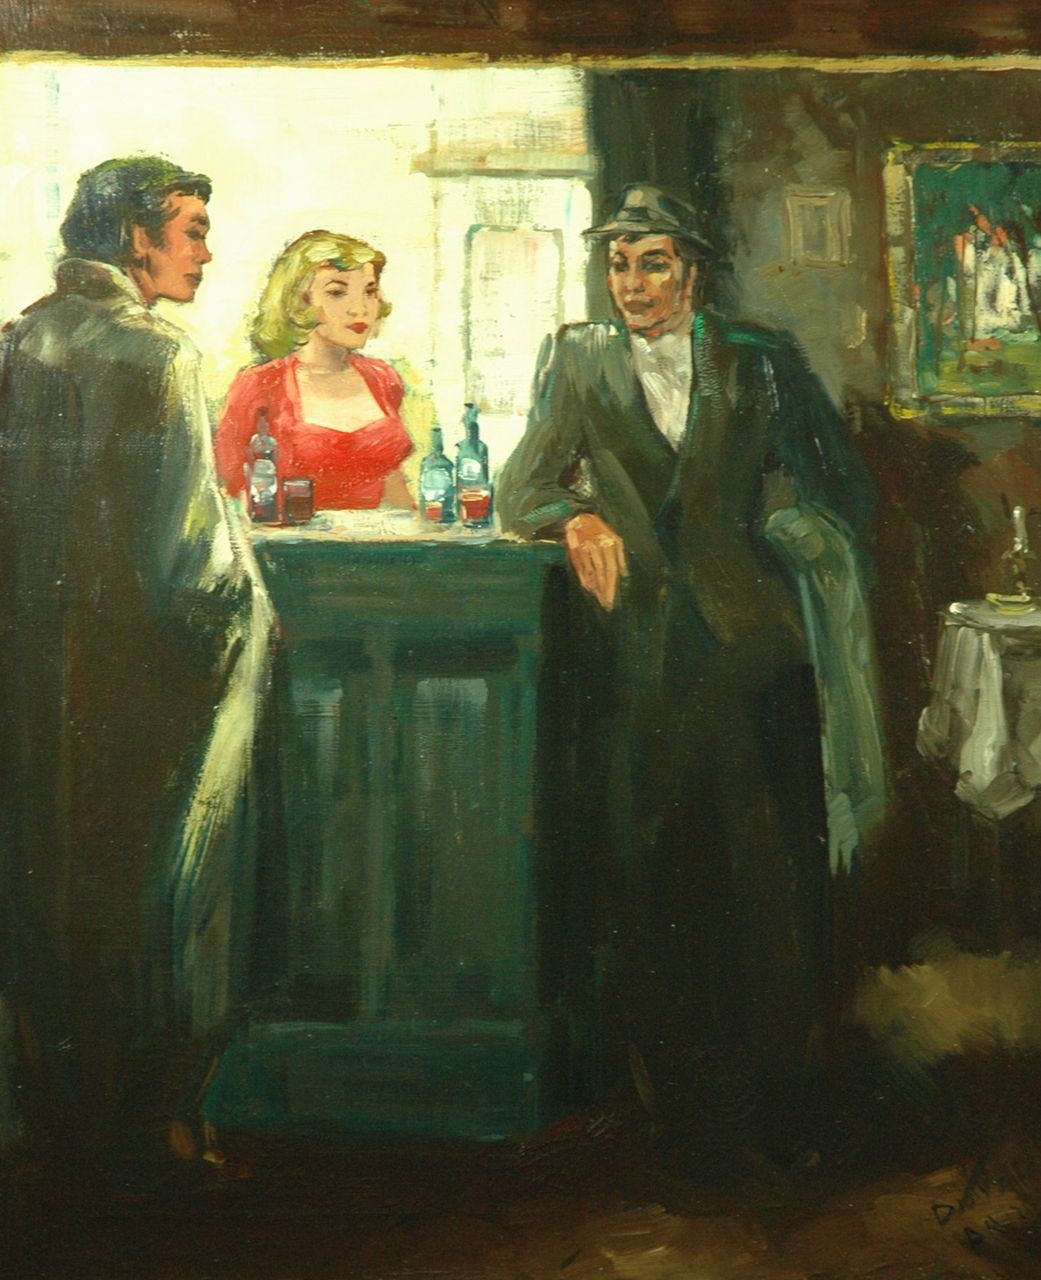 Duval   | Duval, Talking at the bar, Öl auf Leinwand 59,3 x 49,8 cm, signed l.r. Duval